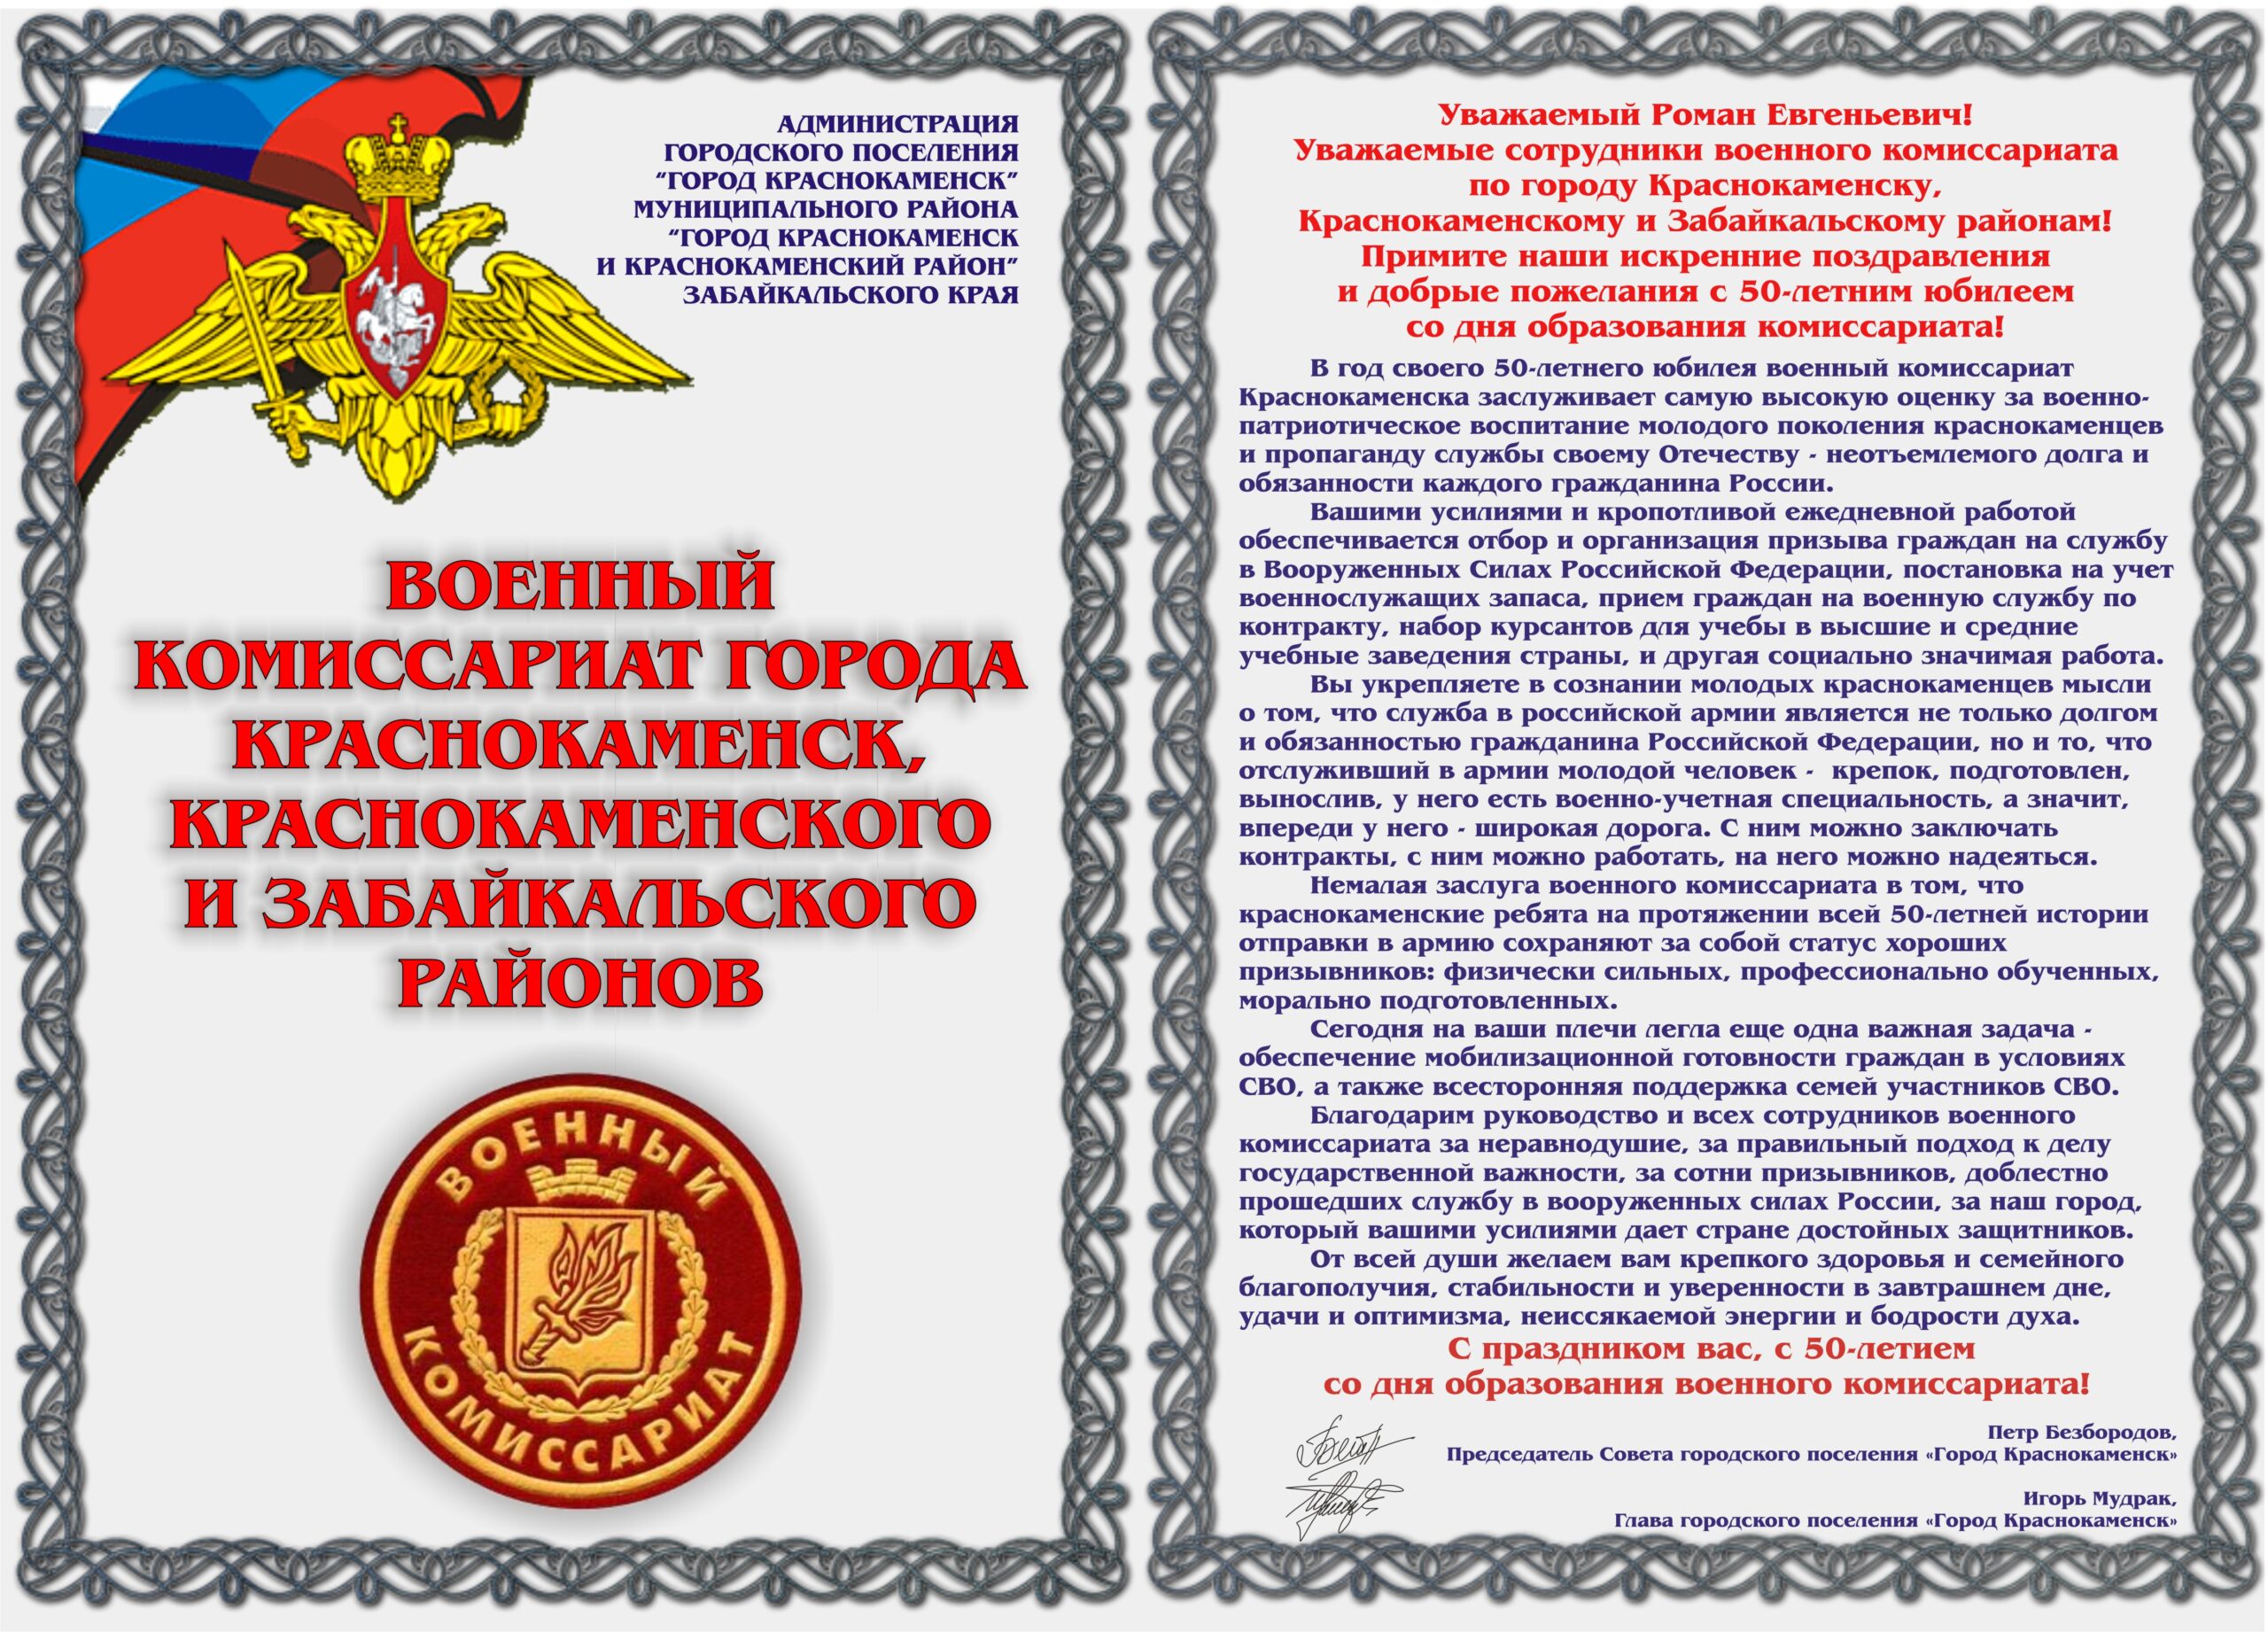 15 января 50 лет со дня образования военного комиссариата по городу Краснокаменску, Краснокаменскому и Забайкальскому районам!